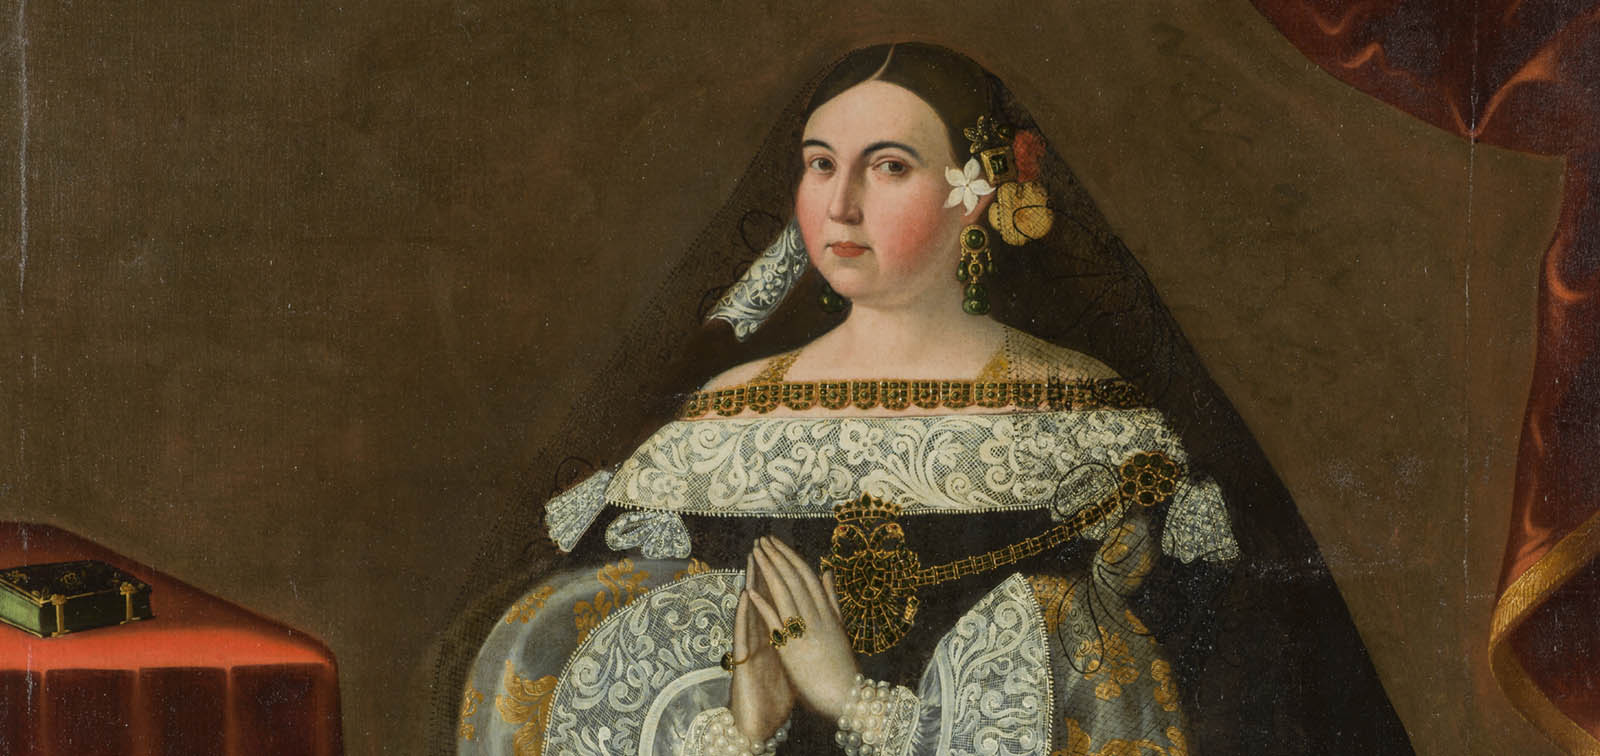 Memoria, autoridad y devoción: la tradición del retrato en la pintura virreinal de Lima